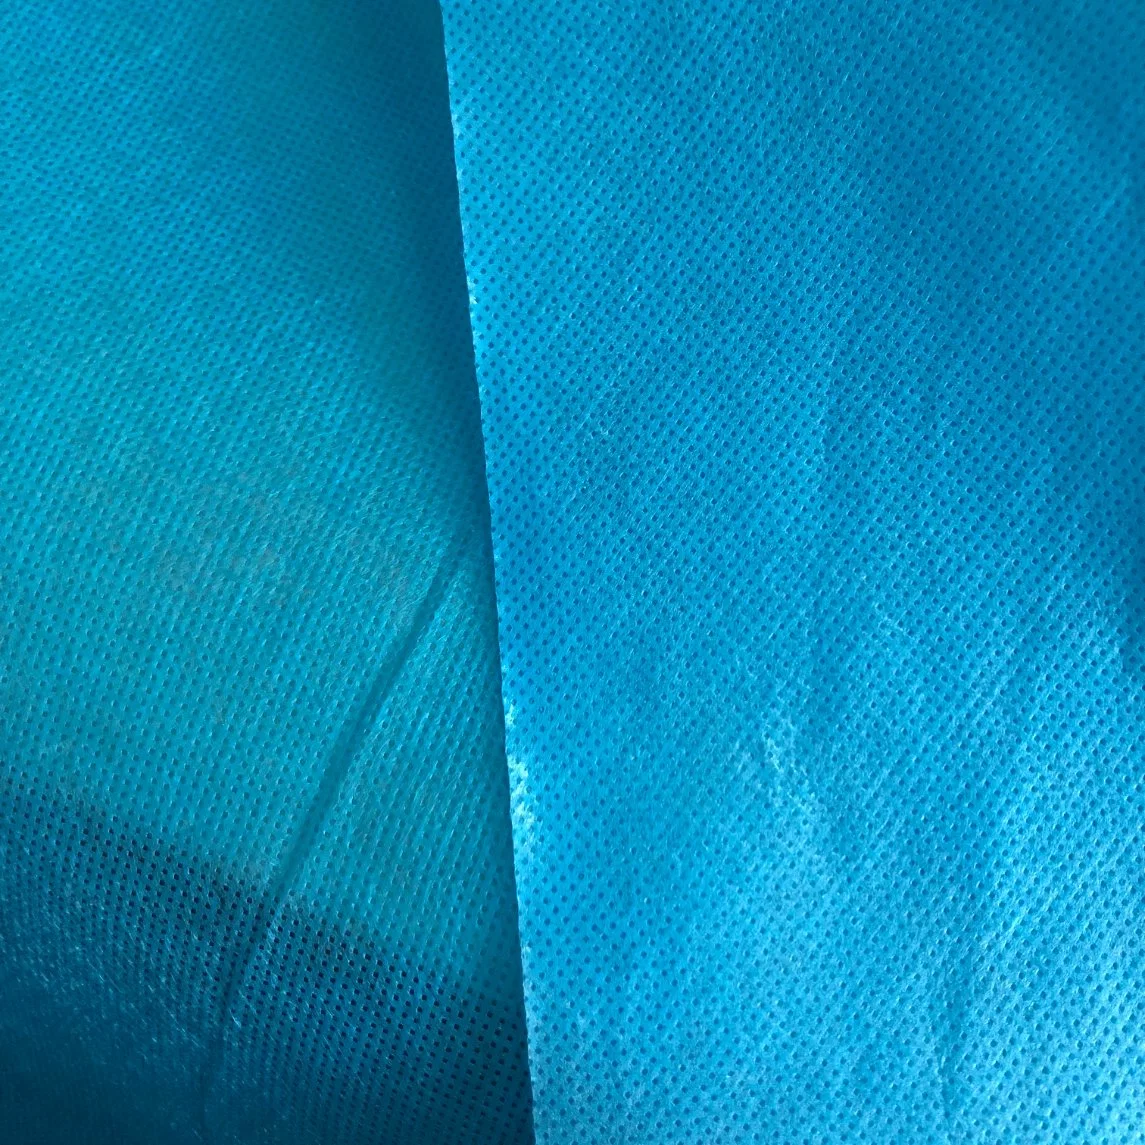 Tissu non tissé en PP avec revêtement en PE pour tissu de combinaison de protection pour combinaison chirurgicale et blouse chirurgicale